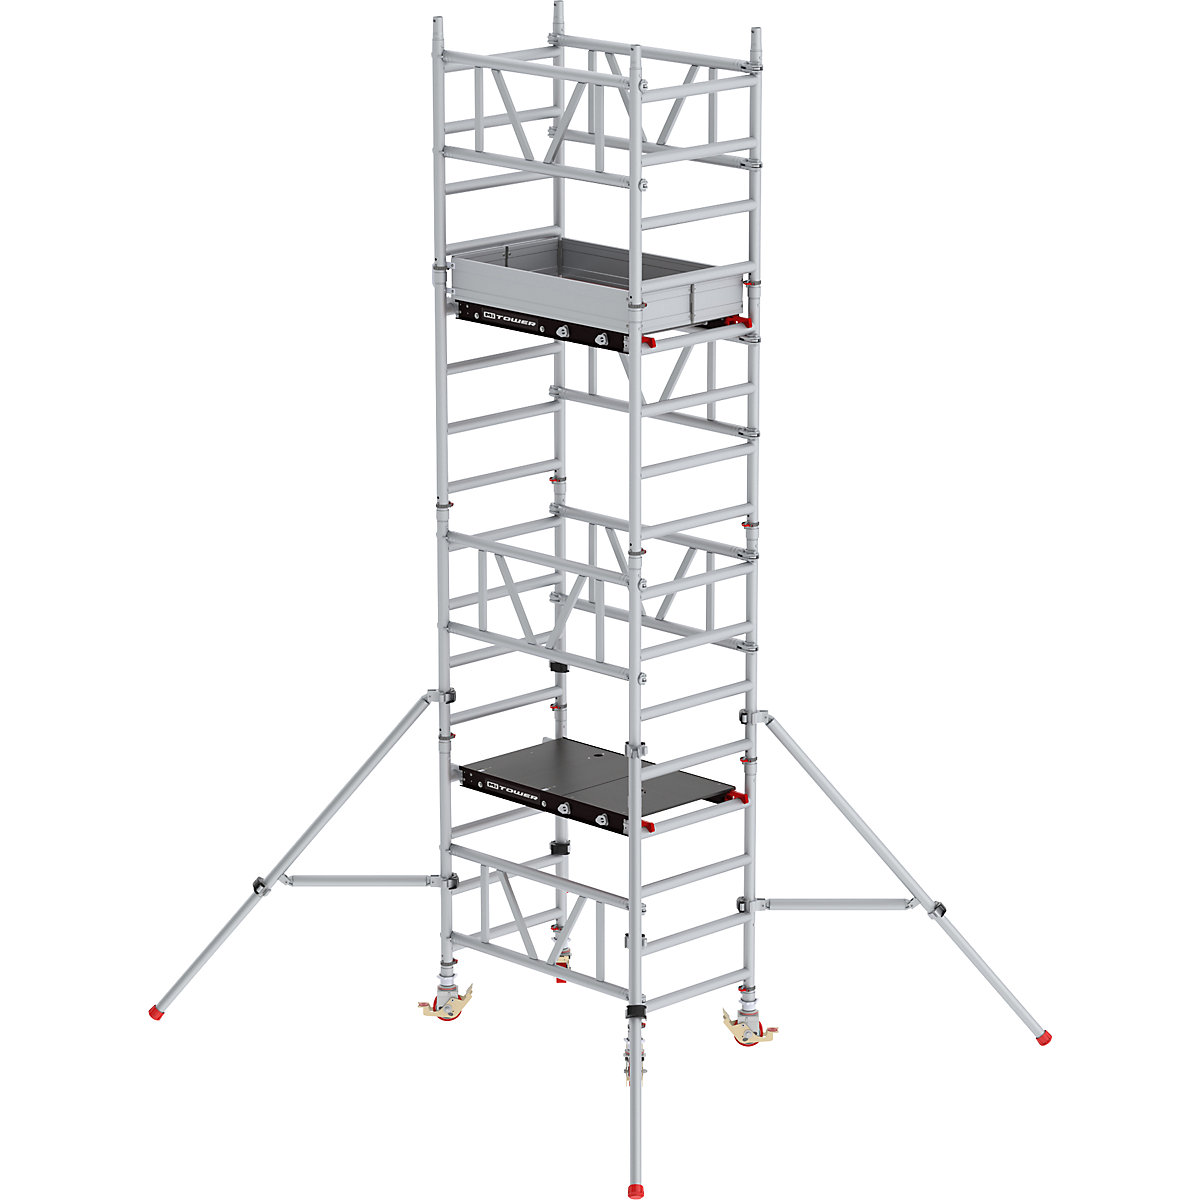 Snelbouw-rolsteiger MiTOWER Standaard – Altrex, Fiber-Deck®-platform, l x b = 1200 x 750 mm, werkhoogte 5 m-25